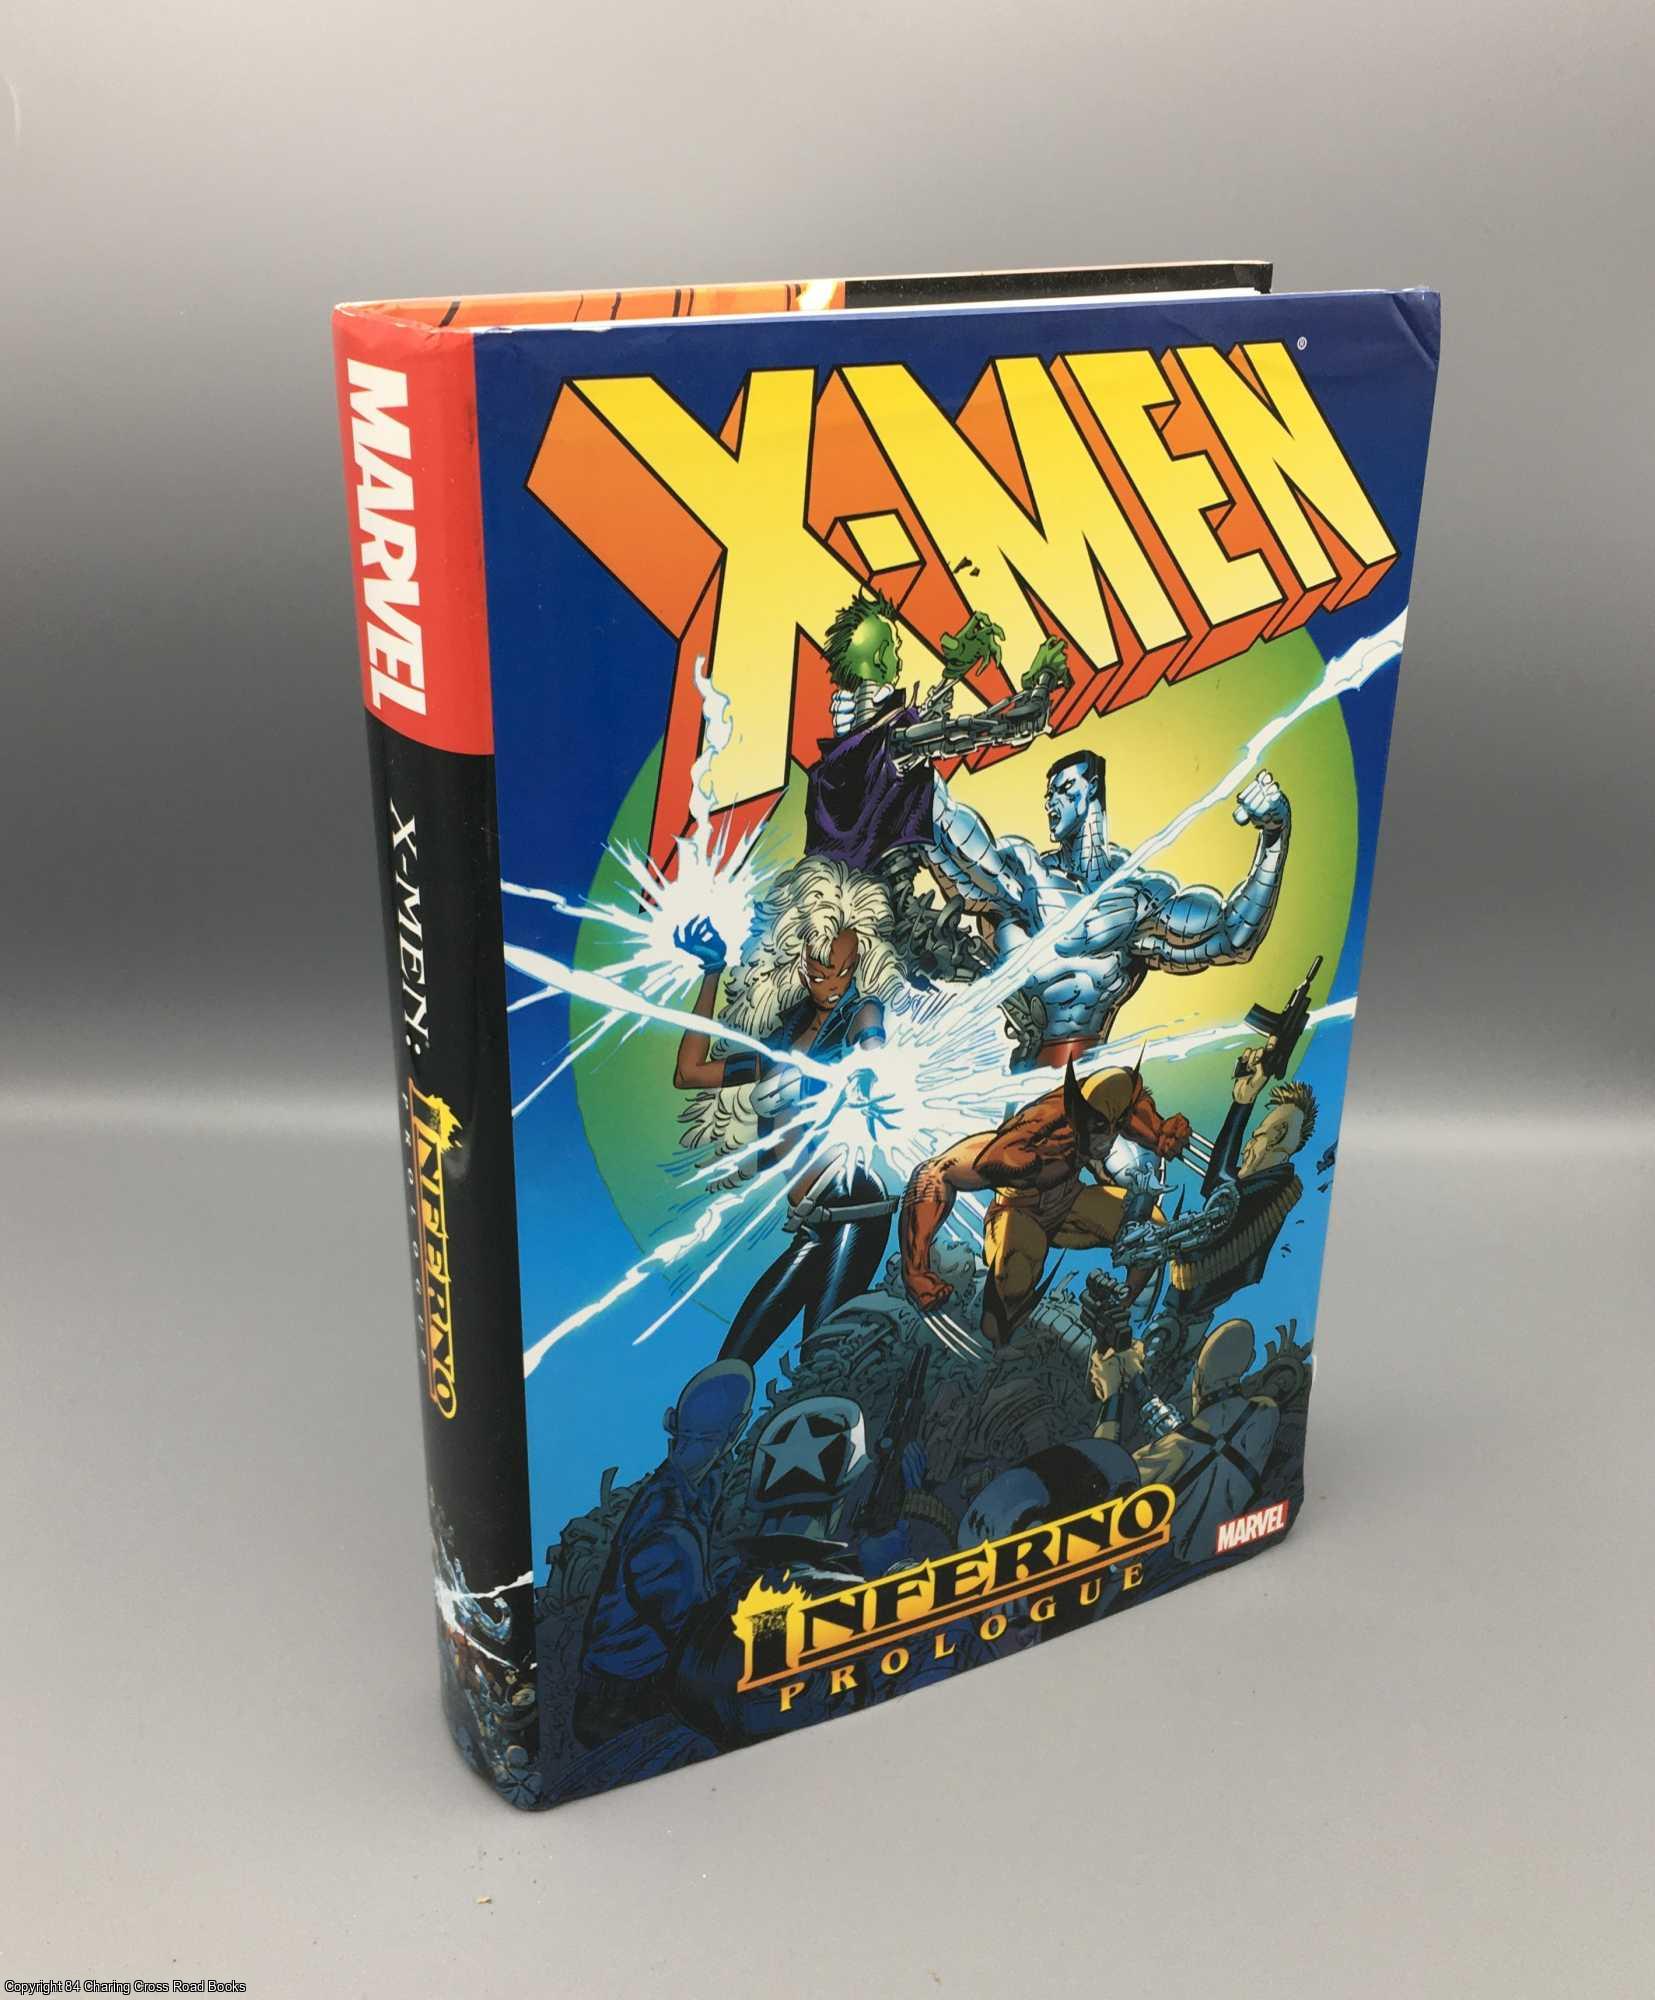 Simonson; Claremont et al. - X-Men: Inferno Prologue